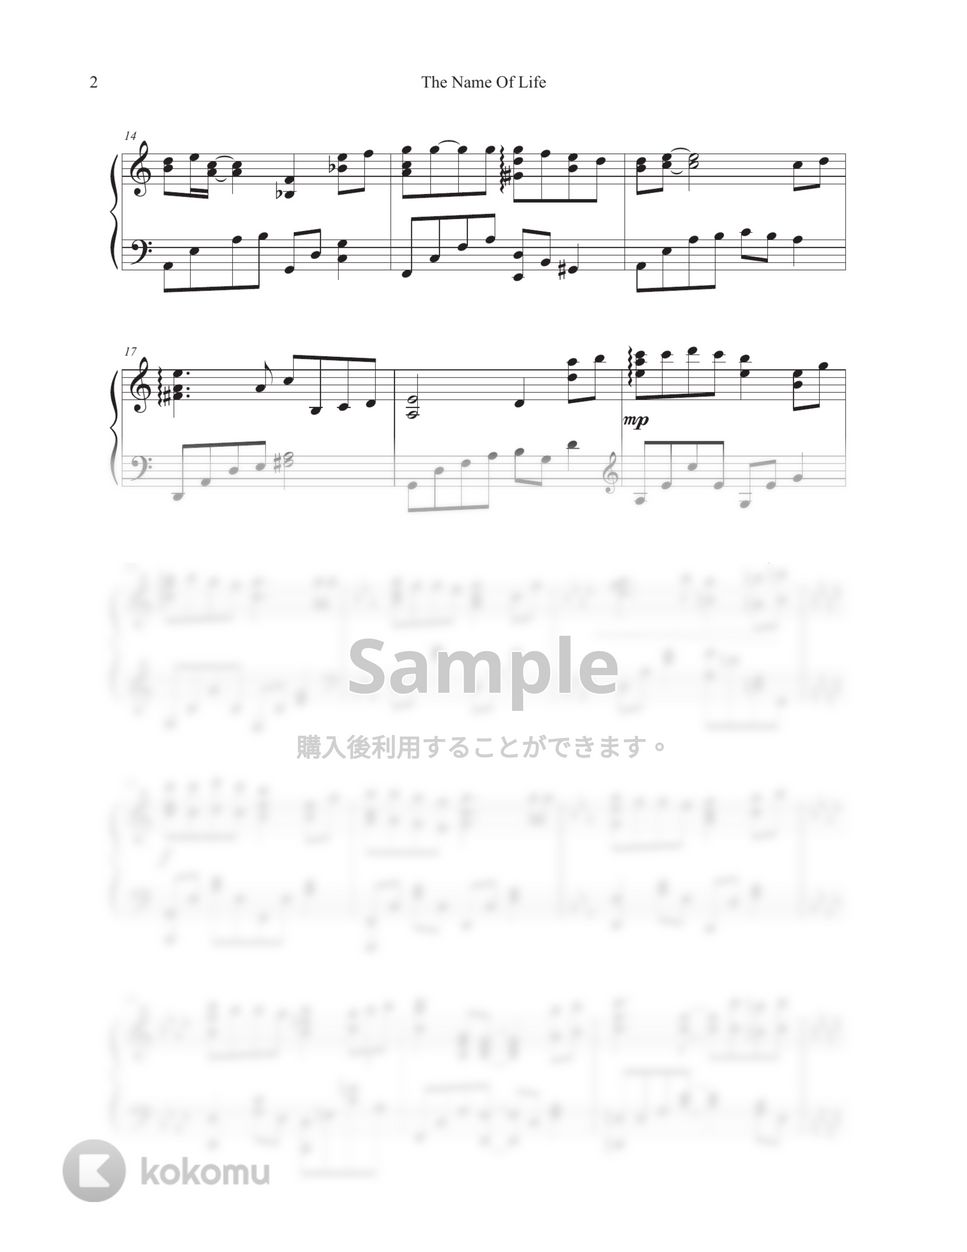 久石譲 - いのちの名前 by Tully Piano